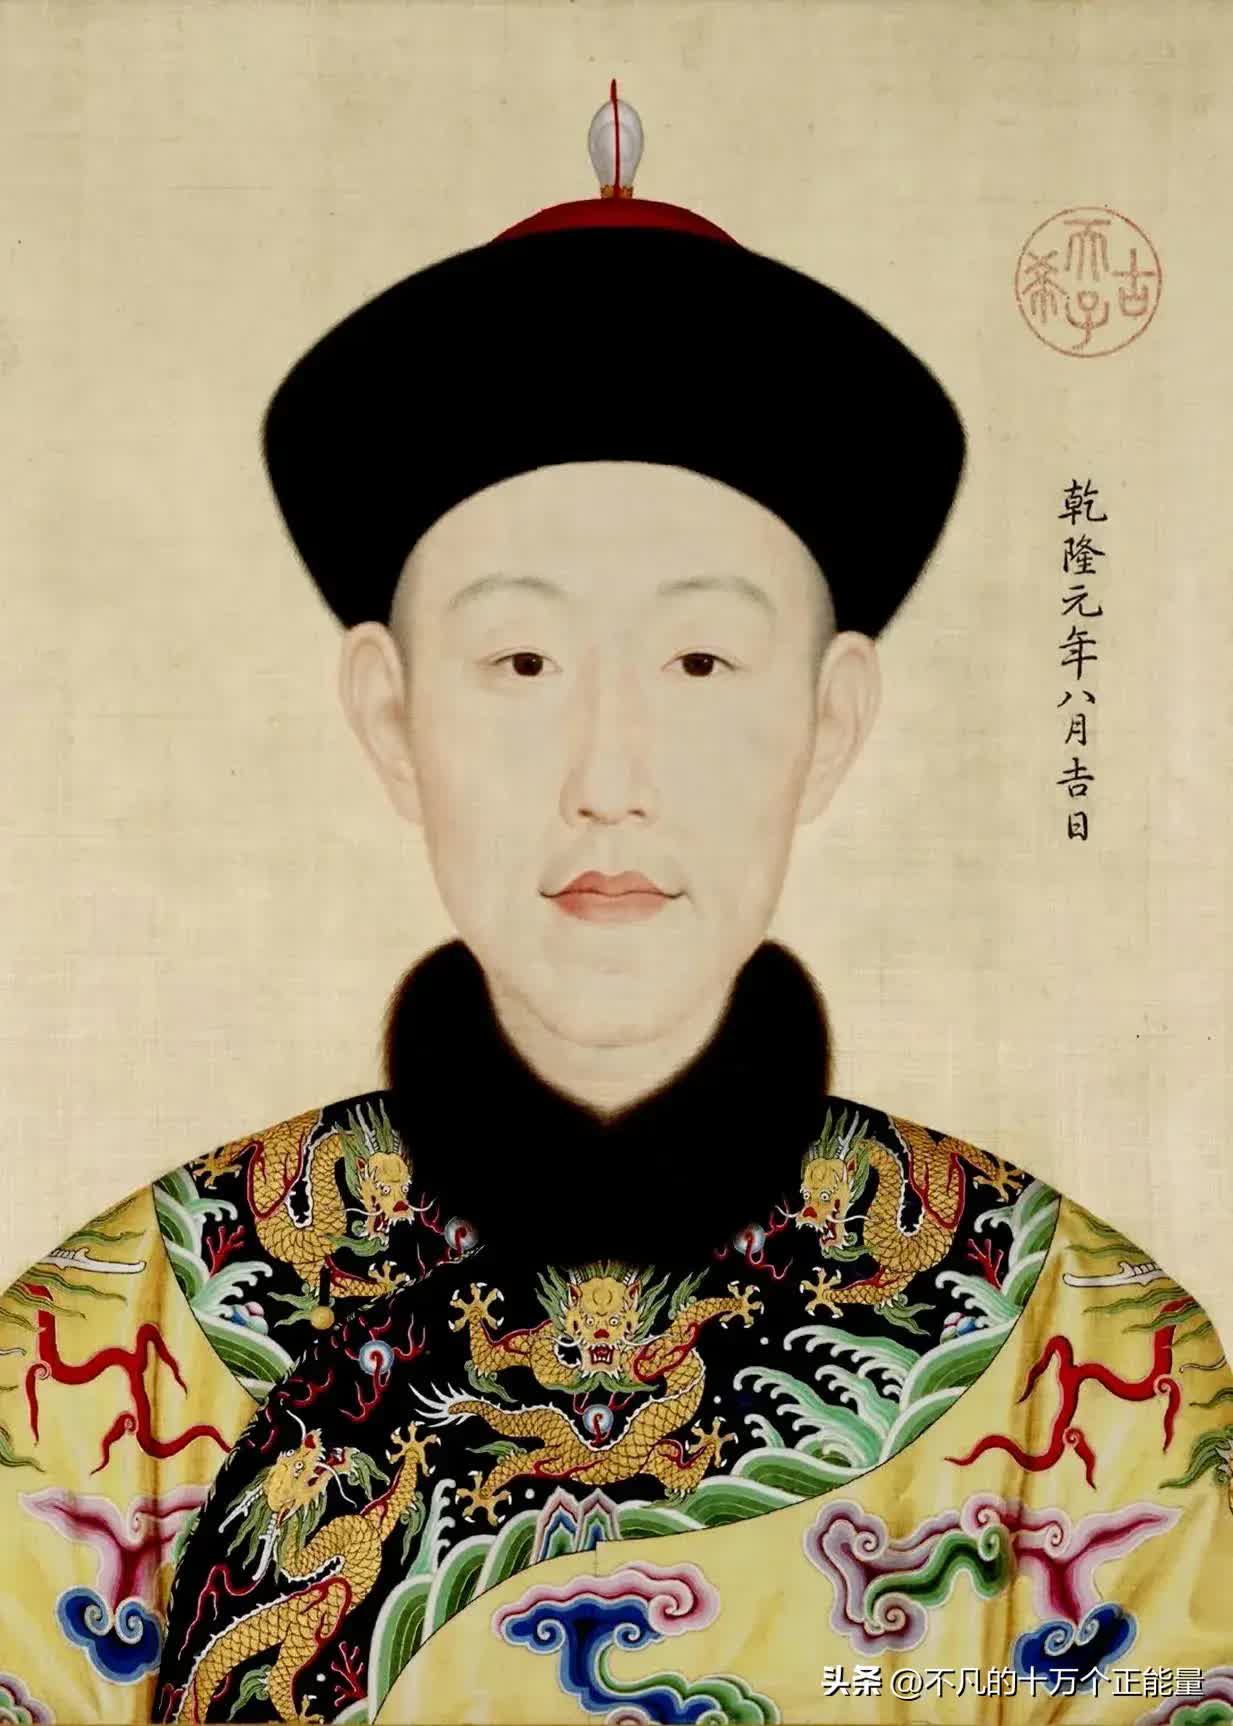 AI thêm màu vào chân dung 12 vị Hoàng đế nhà Thanh: Bất ngờ nhan sắc "đấng lang quân" của Từ Hi Thái hậu- Ảnh 11.